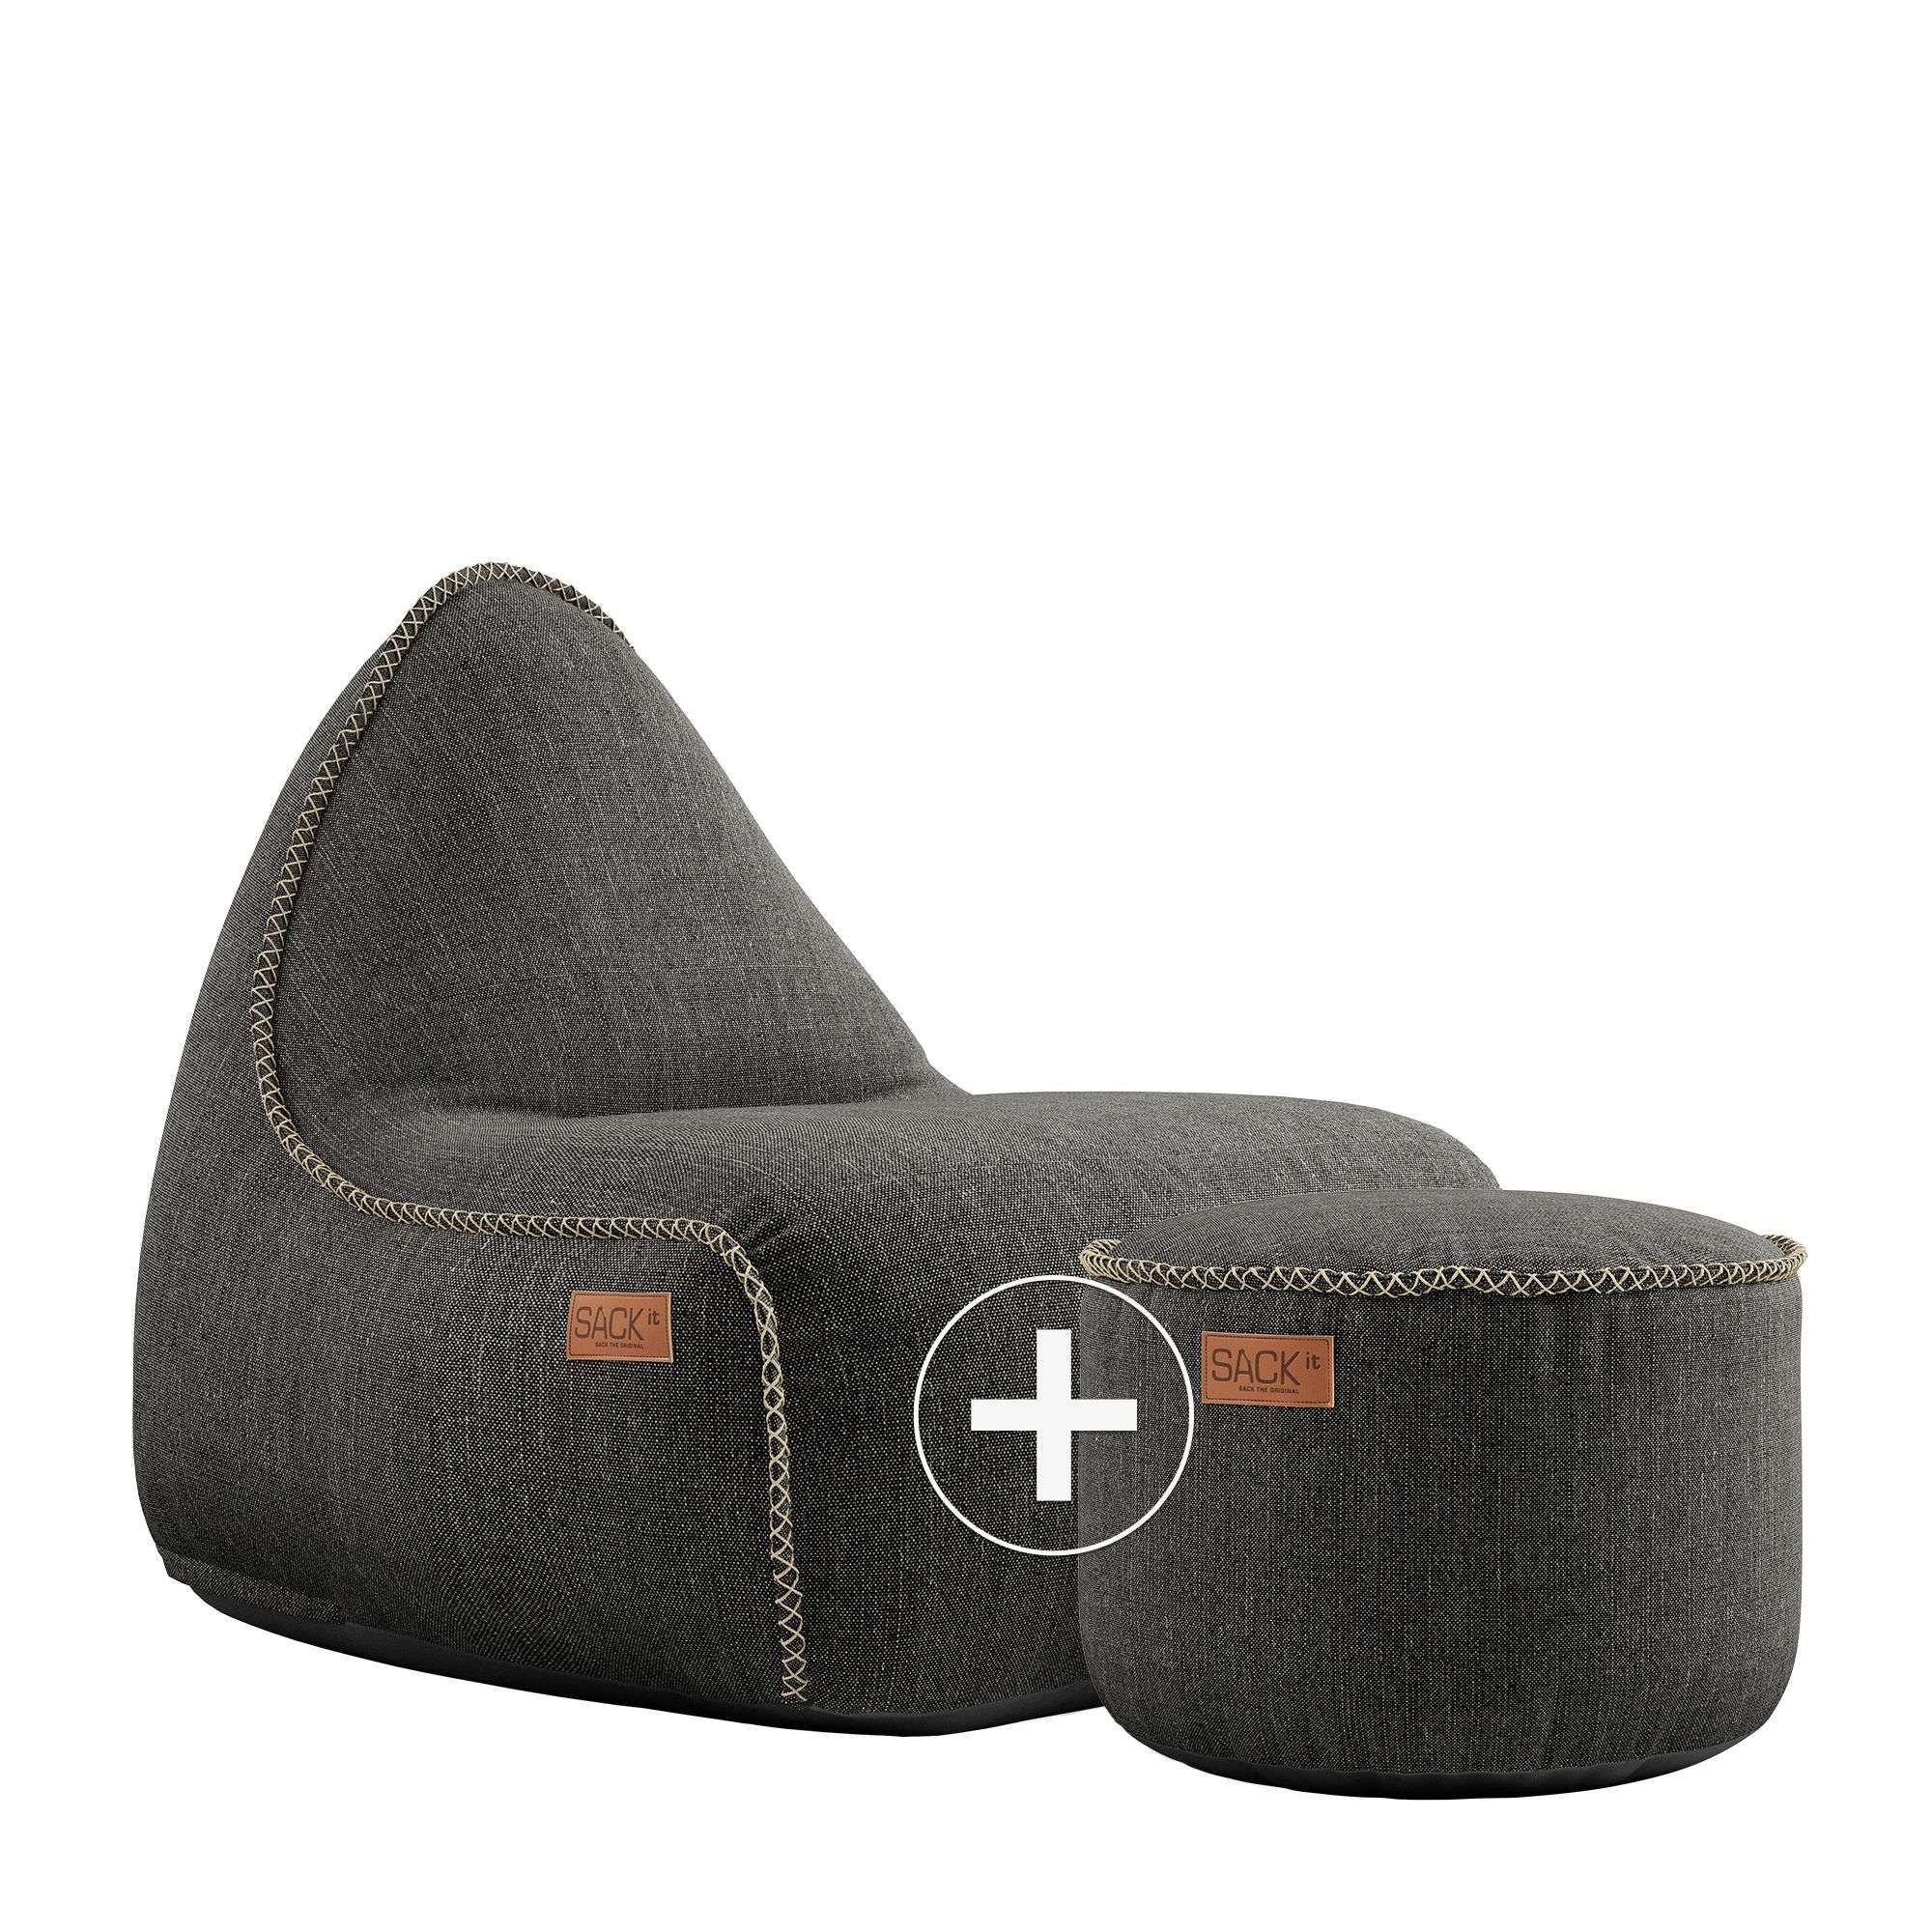 SACKit Cobana Lounge Chair + Pouf, Farbe: Cobana Grey